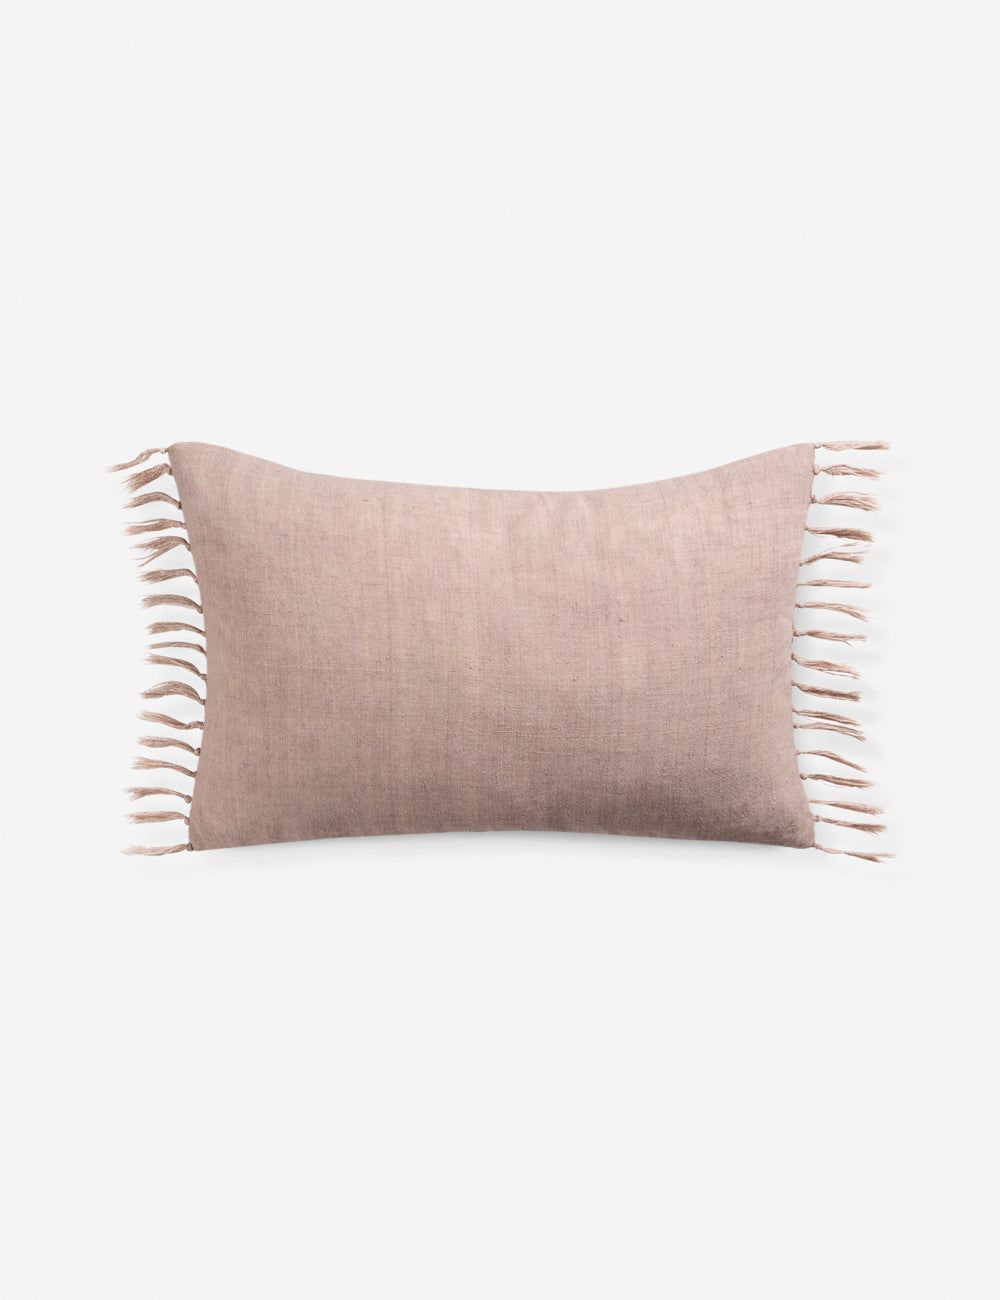 Blush Linen Lumbar Pillow with Tassels, 13" x 21"